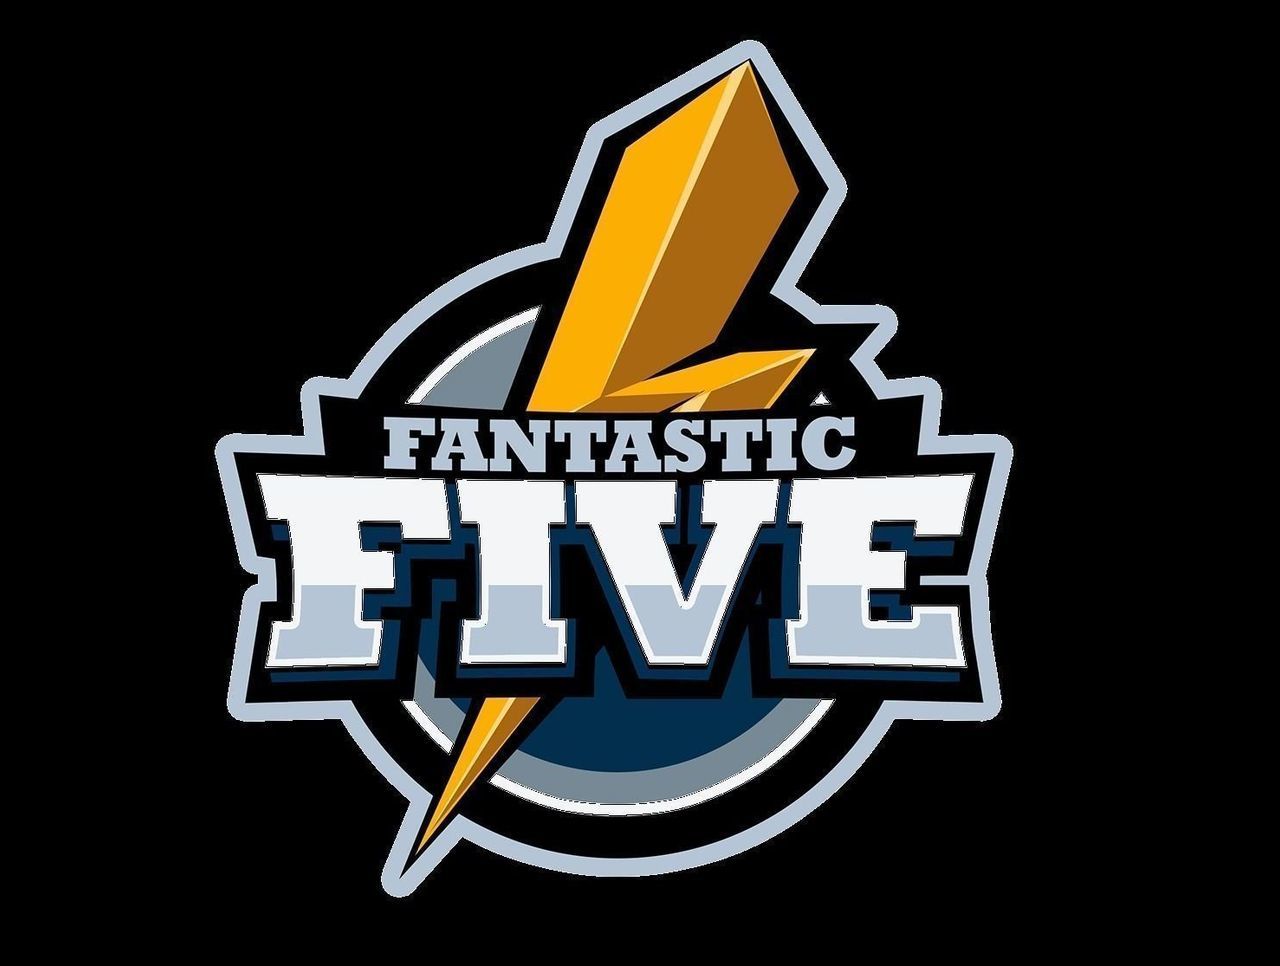 Fantastic Five могут изменить состав по Dota 2